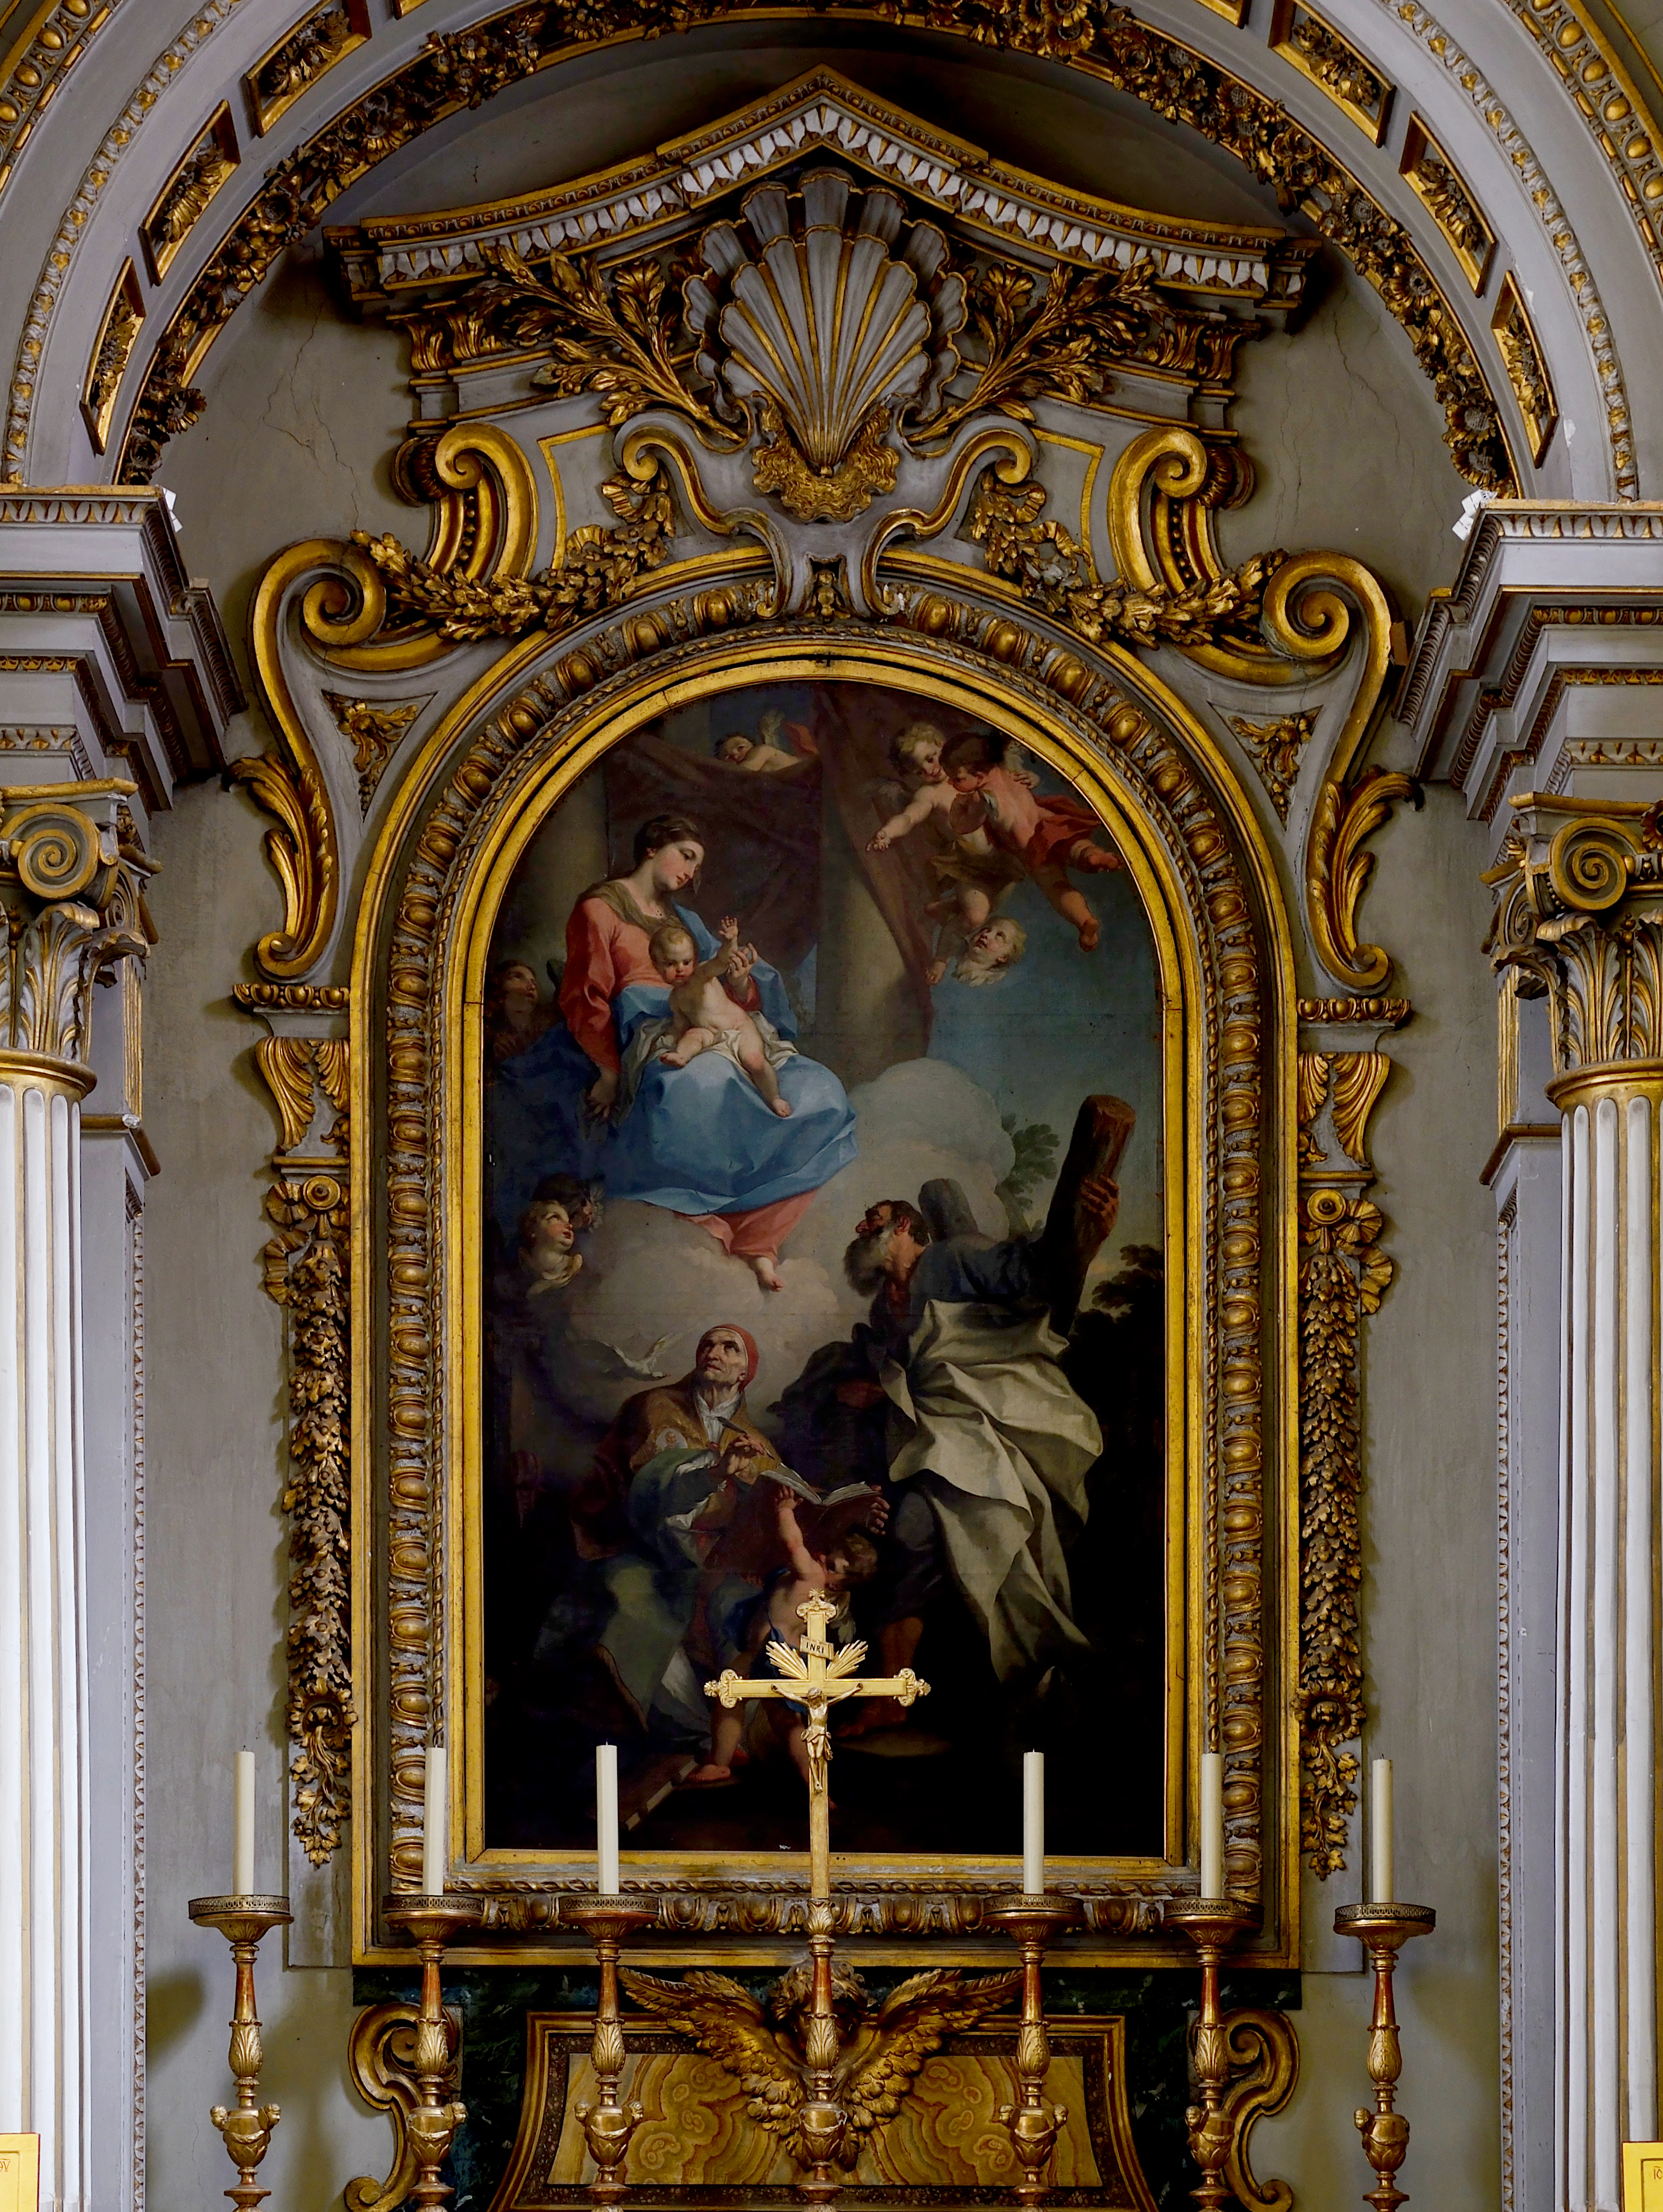 Framwork of the altar in San Gregorio al Celio (Rome)